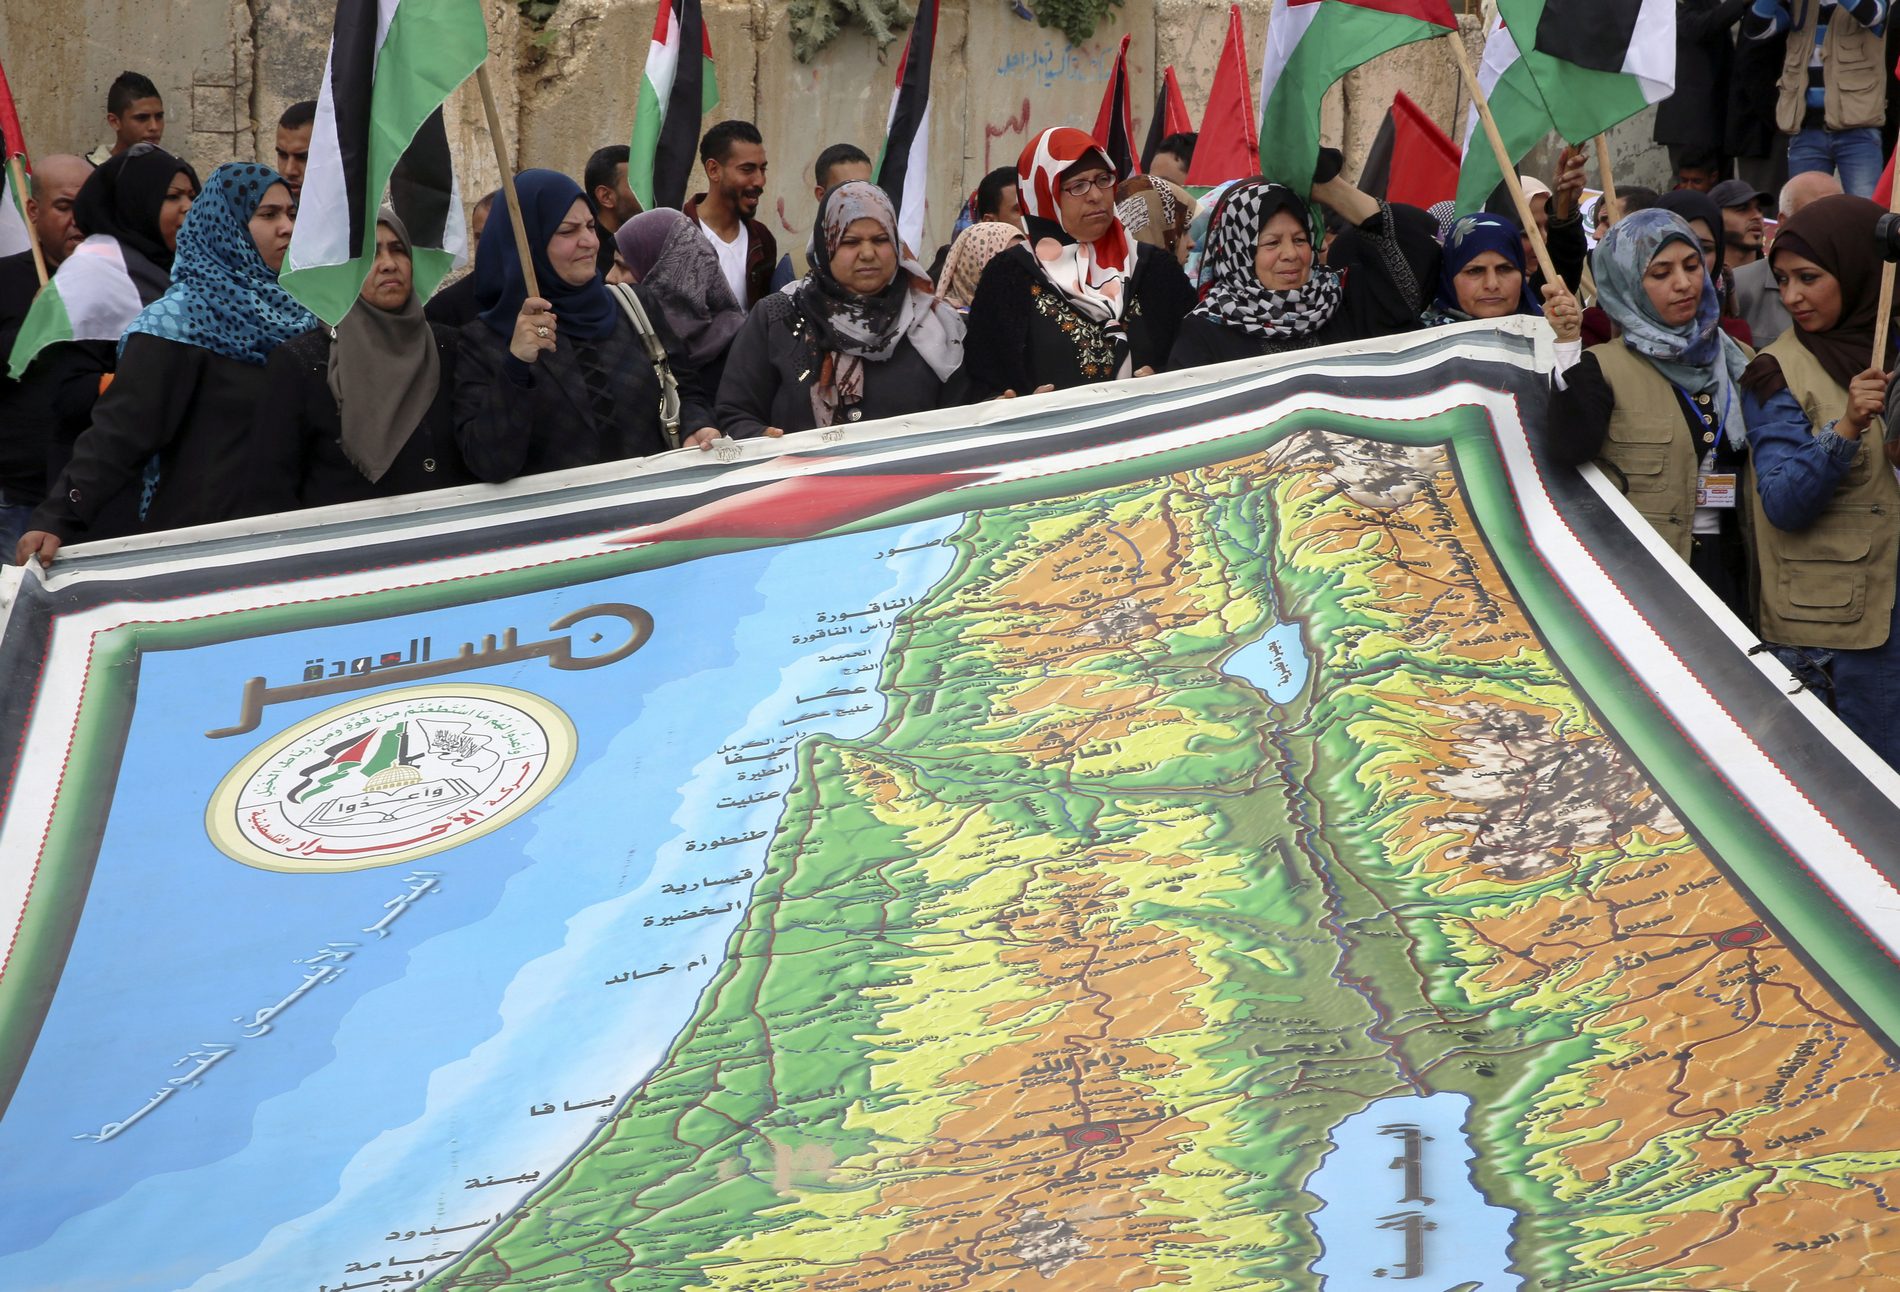 Ισπανία, Ιρλανδία και Νορβηγία αναγνωρίζουν παλαιστινιακό κράτος – σε ανάκληση πρεσβευτών προχωρά το Ισραήλ